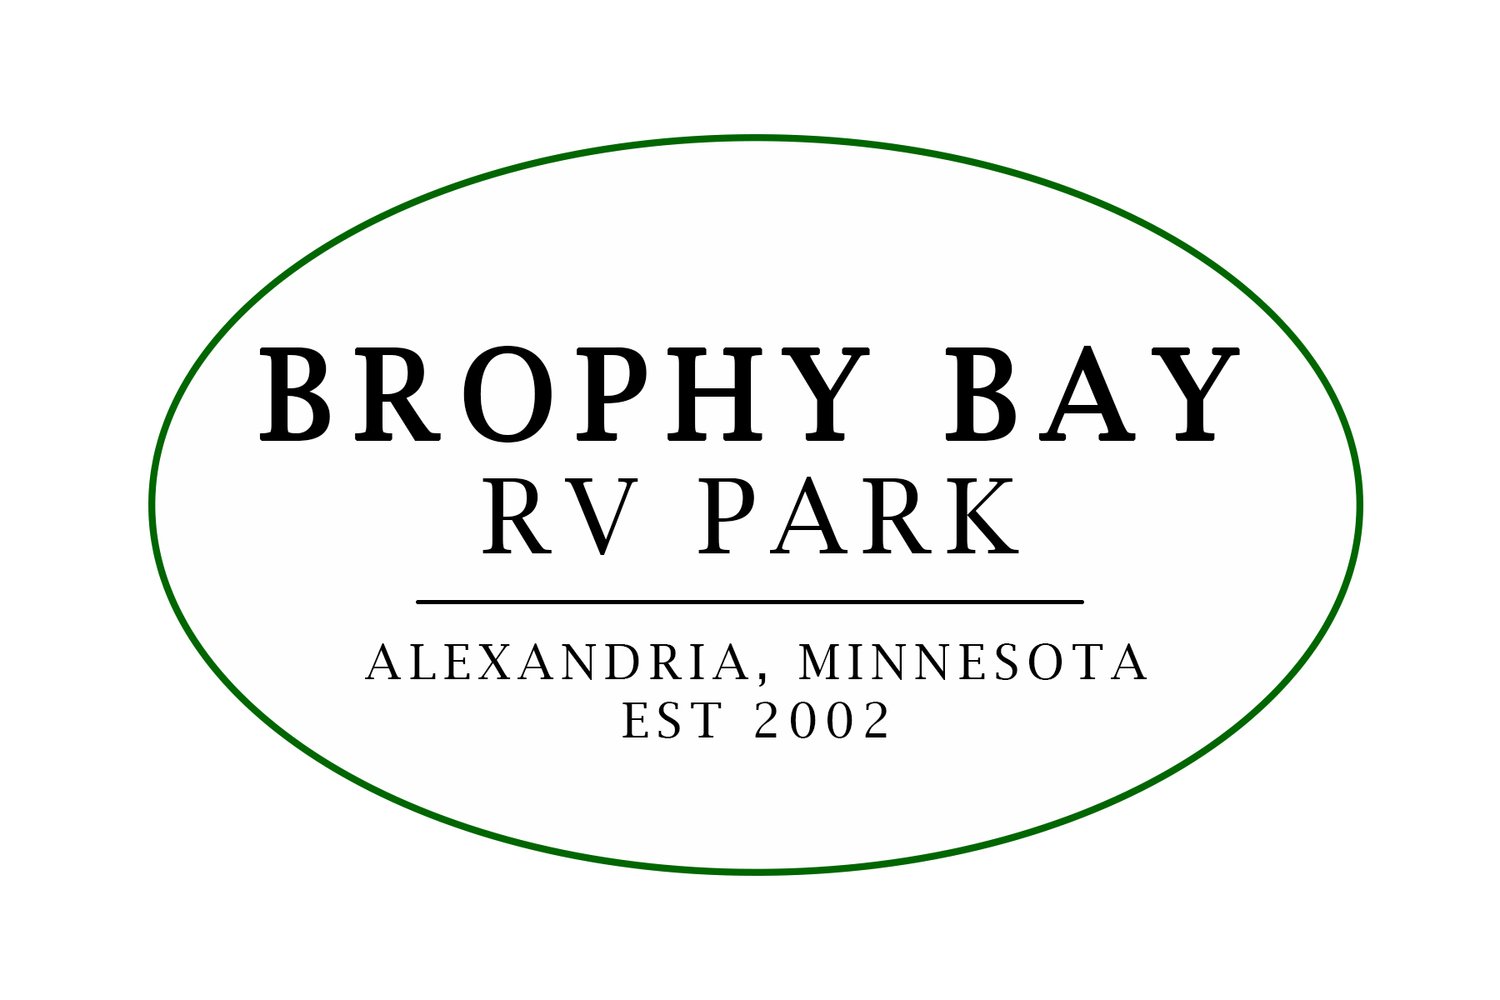 Brophy Bay RV Park